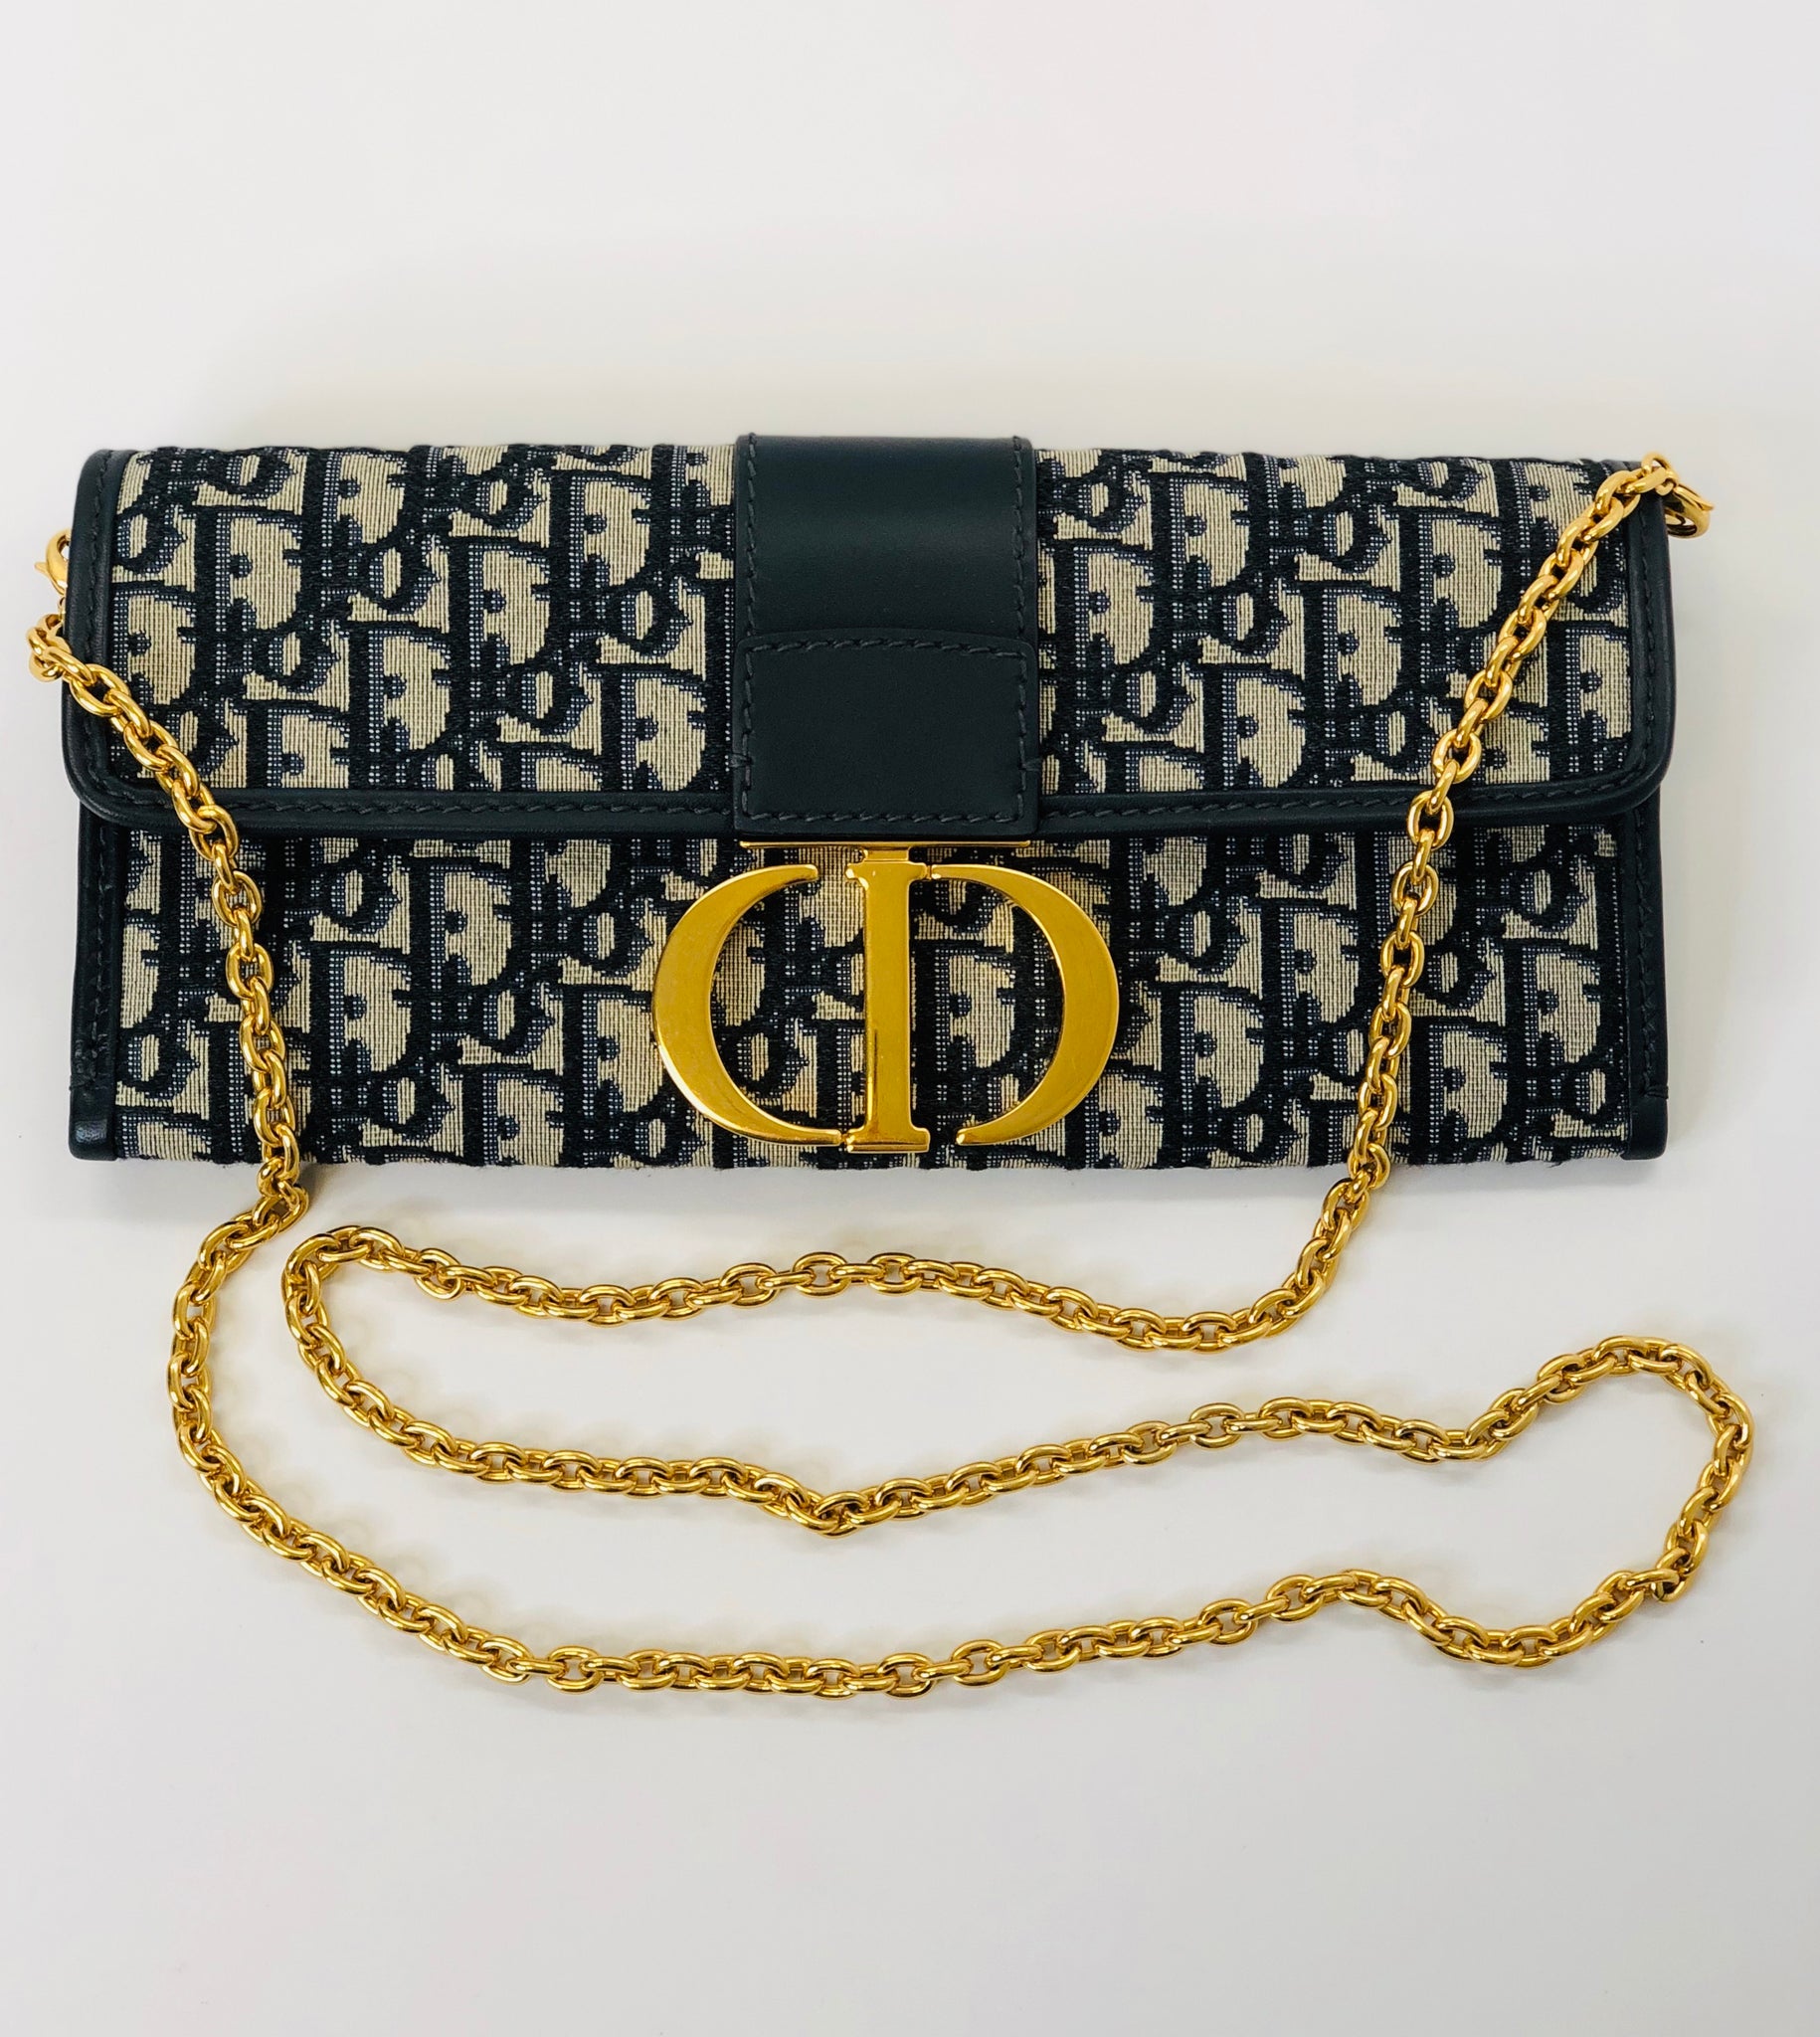 Dior handbags 2019  Yellow handbag, Bags, Yellow leather